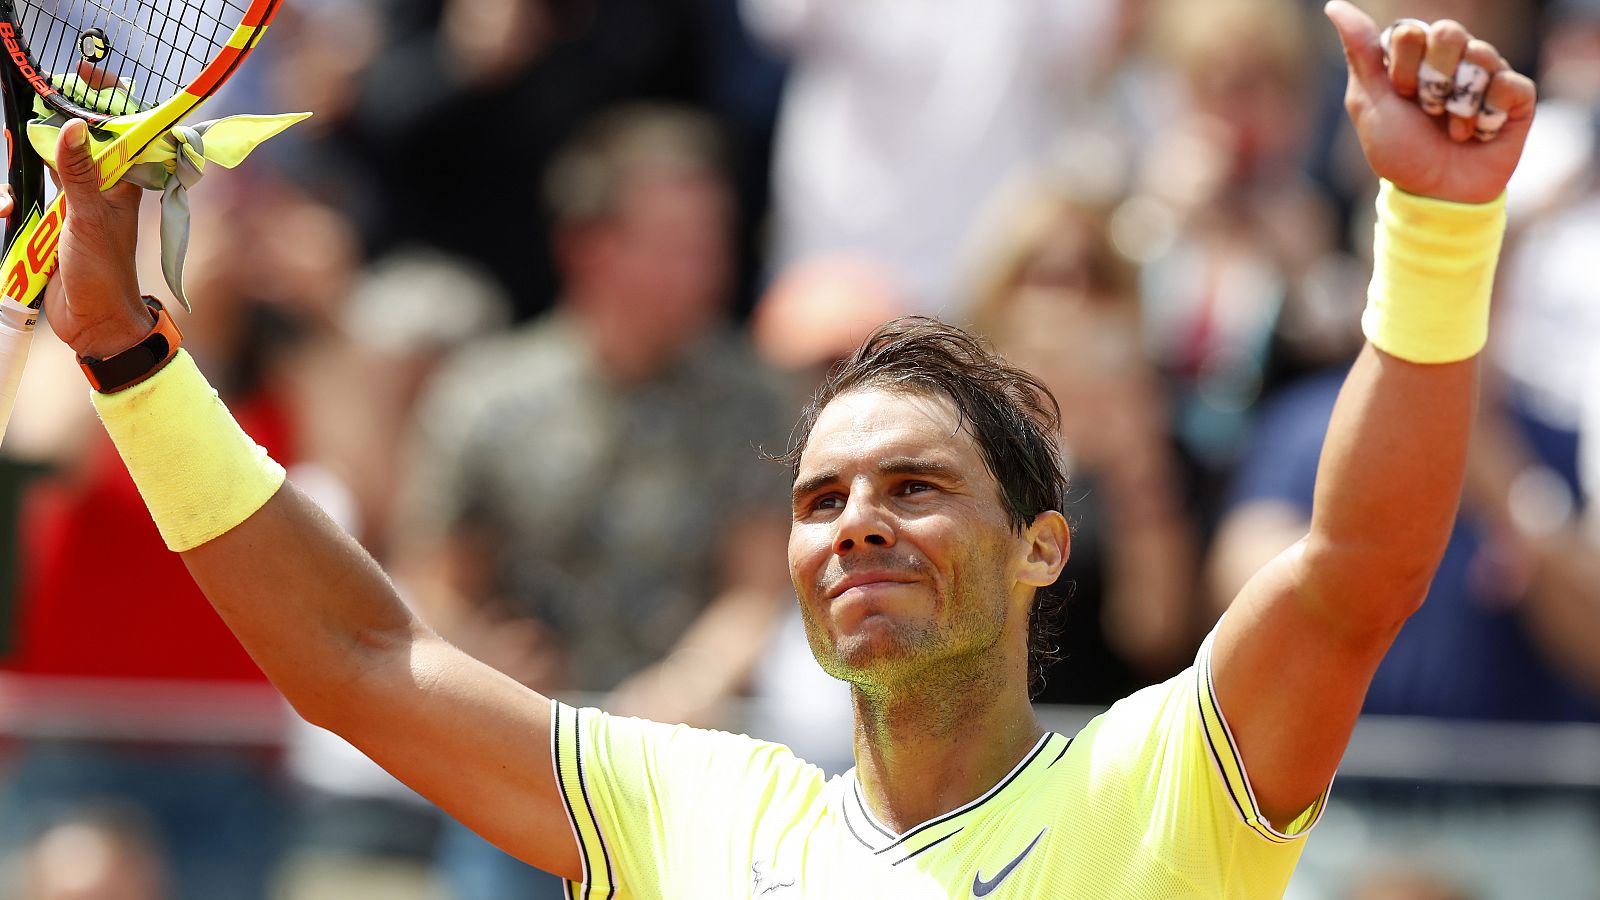 El tenista español Rafa Nadal celebra una victoria en Roland Garros.